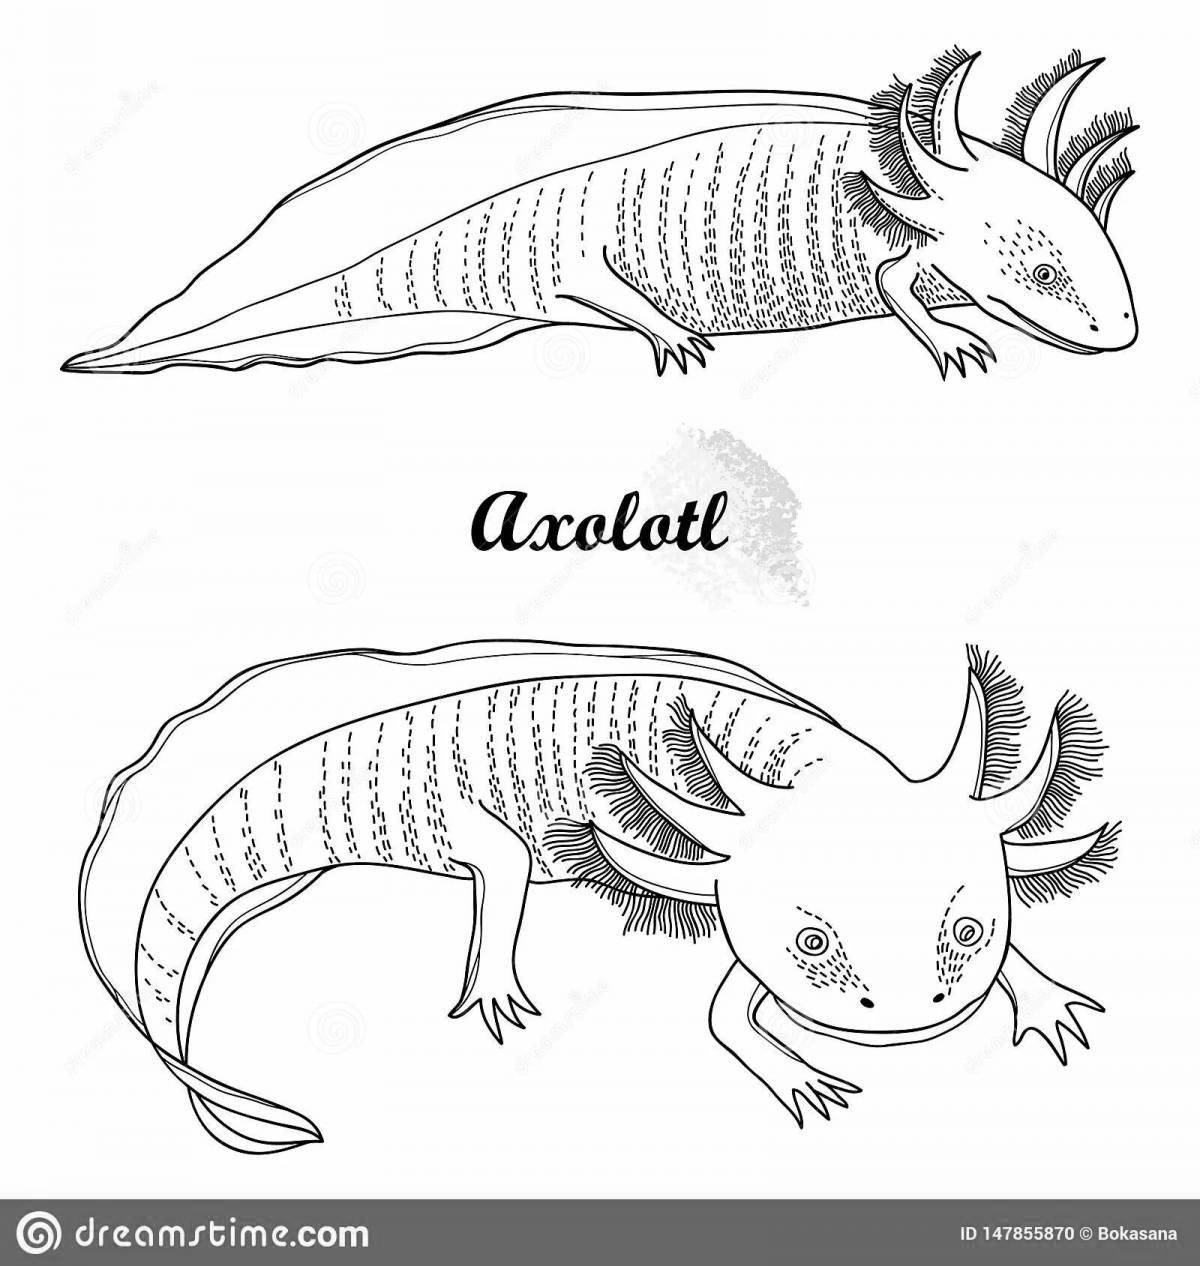 Fun axolotl coloring book for kids